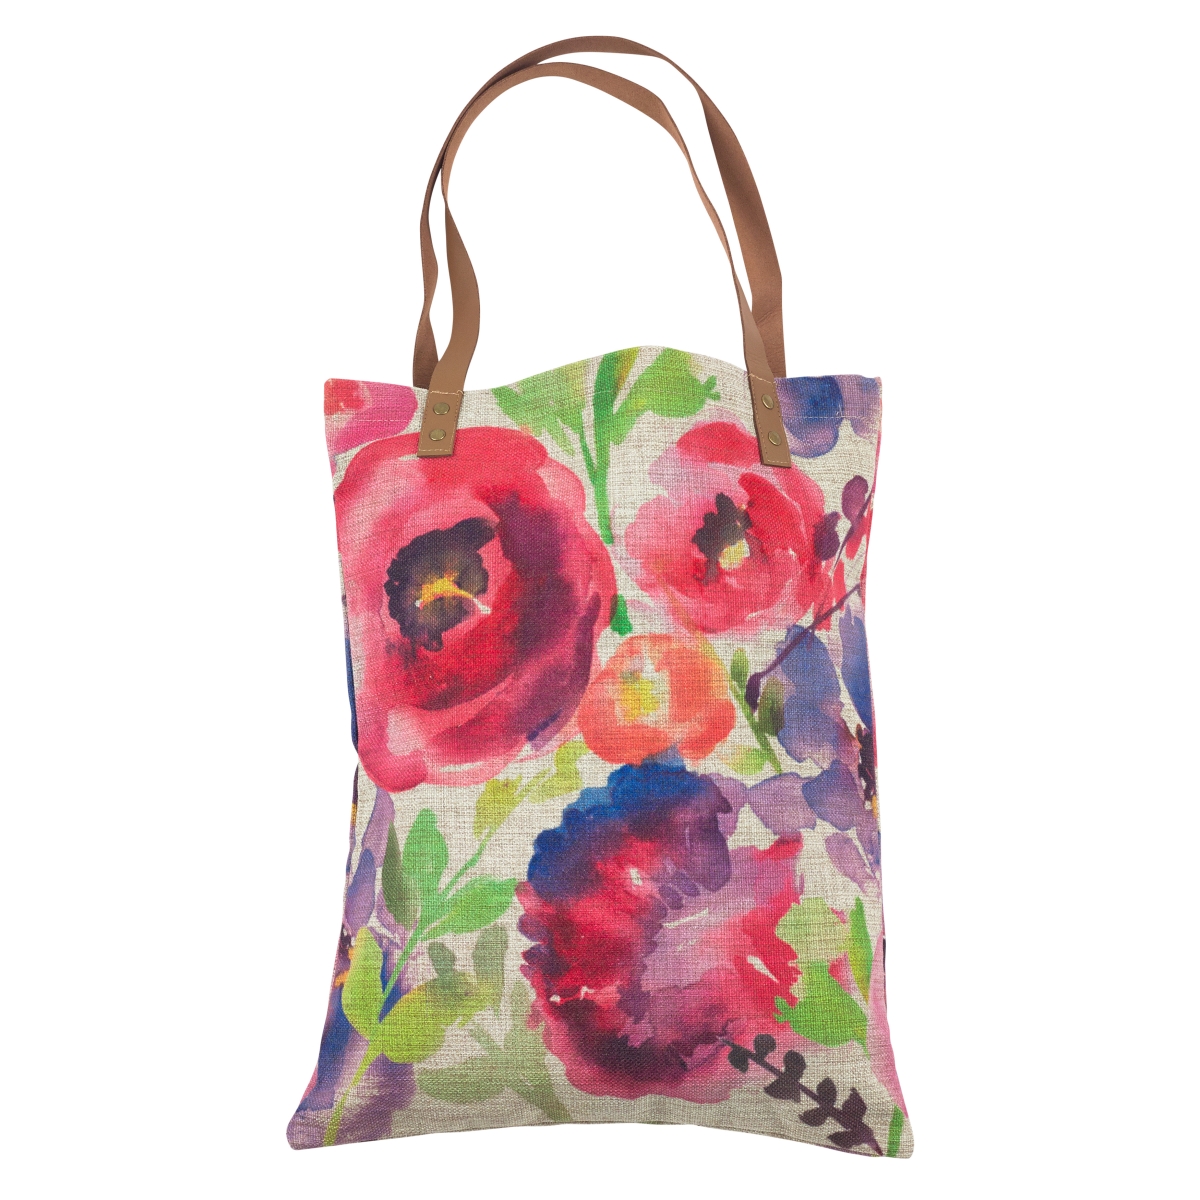 1649.m 14 X 18 In. Watercolor Floral Market Shopper Bag, Multi Color